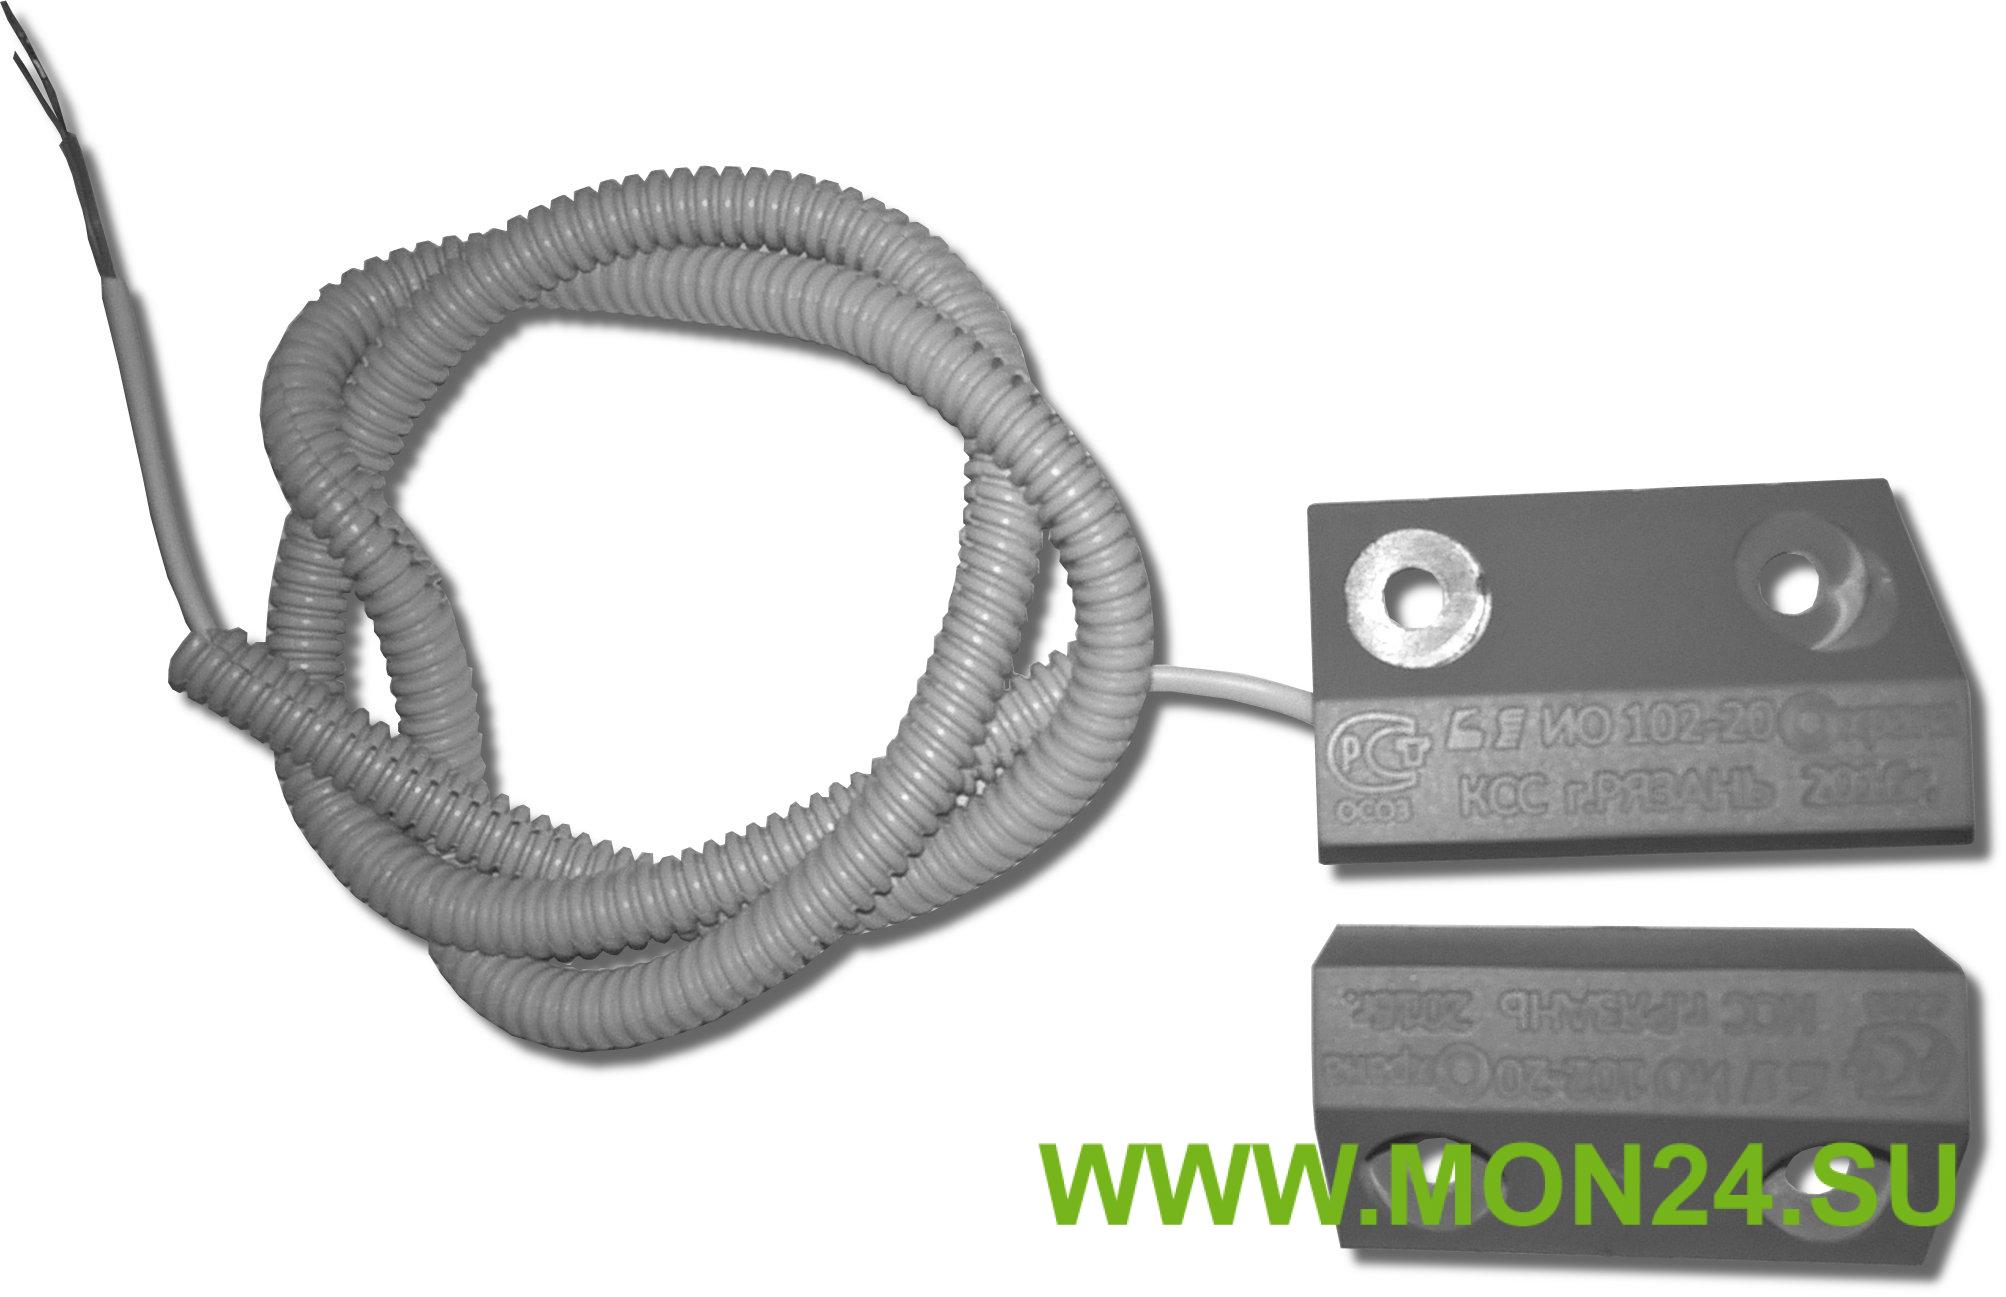 ИО 102-20 Б3П (2): Извещатель охранный точечный магнитоконтактный, кабель в пластмассовом рукаве